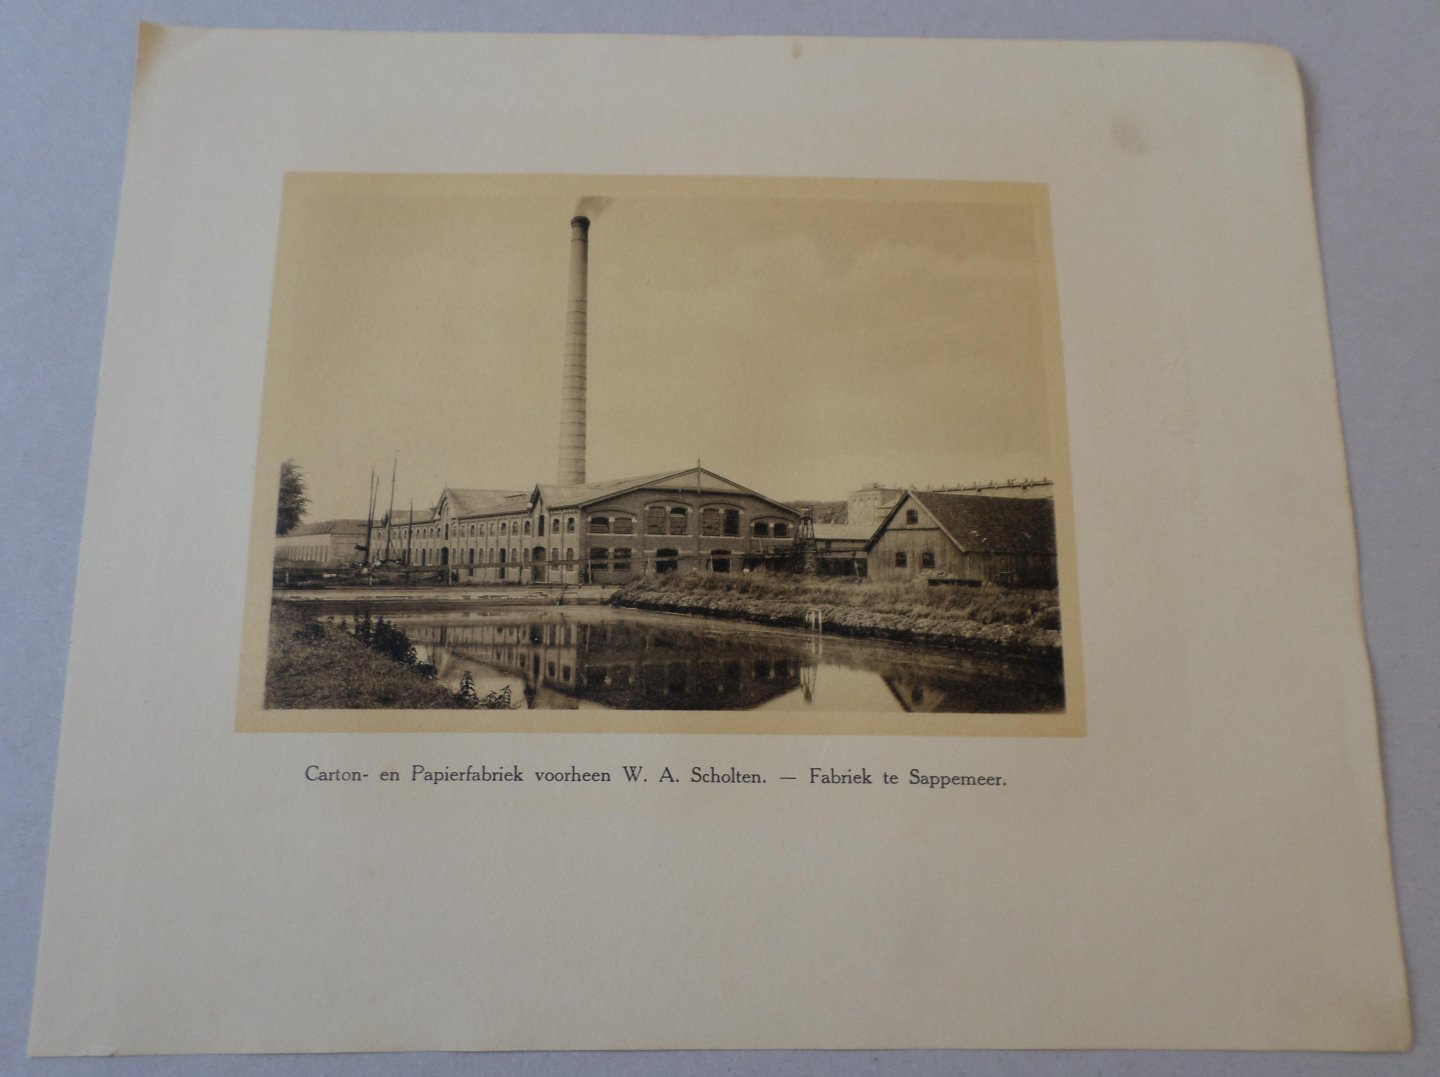 Afbeelding  Carton- en Papierfabriek W.A. Scholten. - Fabriek te Sappemeer. - Afbeelding  Carton- en Papierfabriek W.A. Scholten. - Fabriek te Sappemeer.